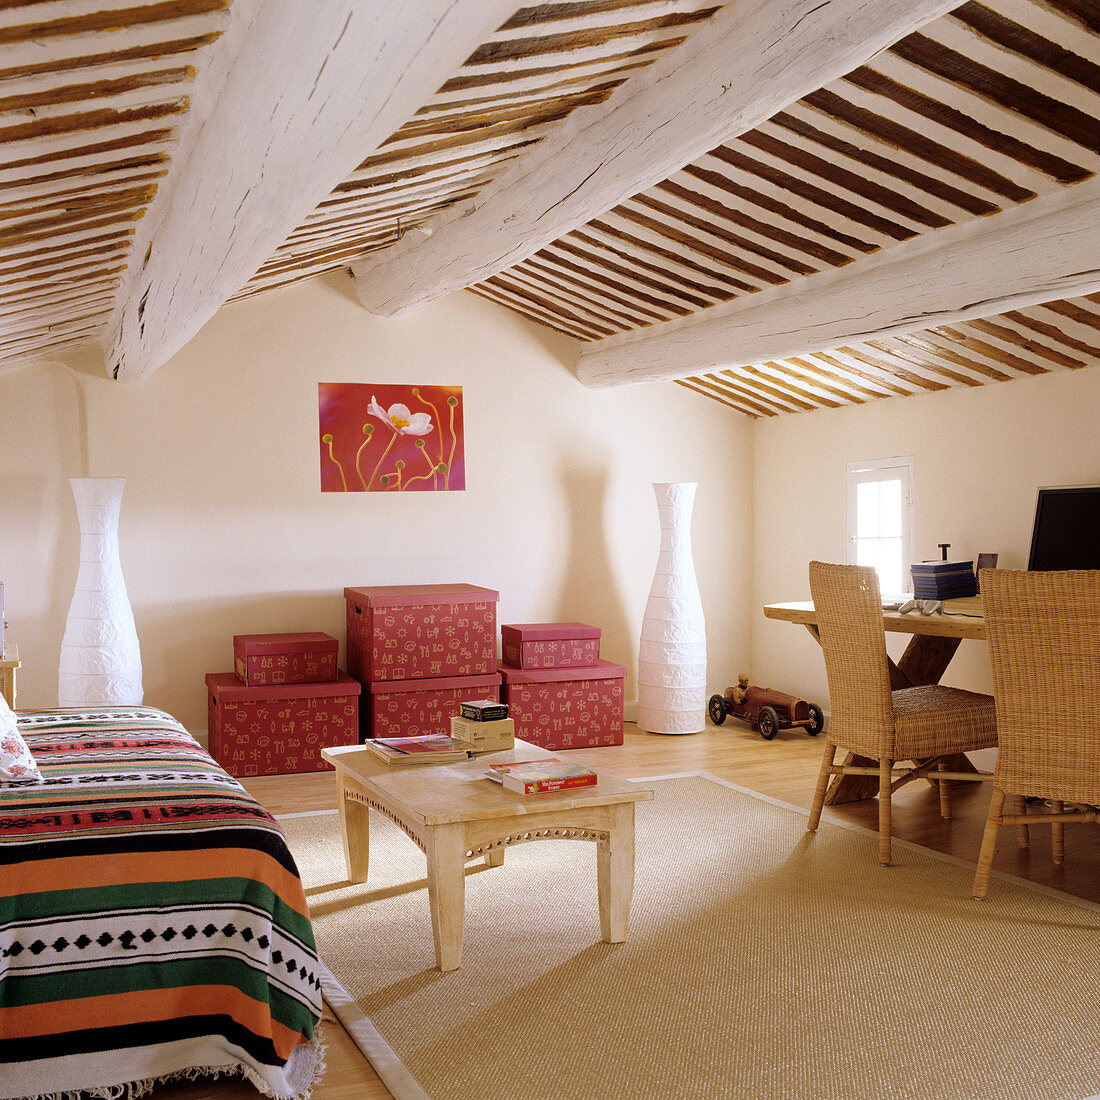 Dachzimmer eines mediterranen Wohnhauses mit folkloristischer Tagesdecke auf Couch und gestapelten Aufbewahrungsschachteln vor Wand